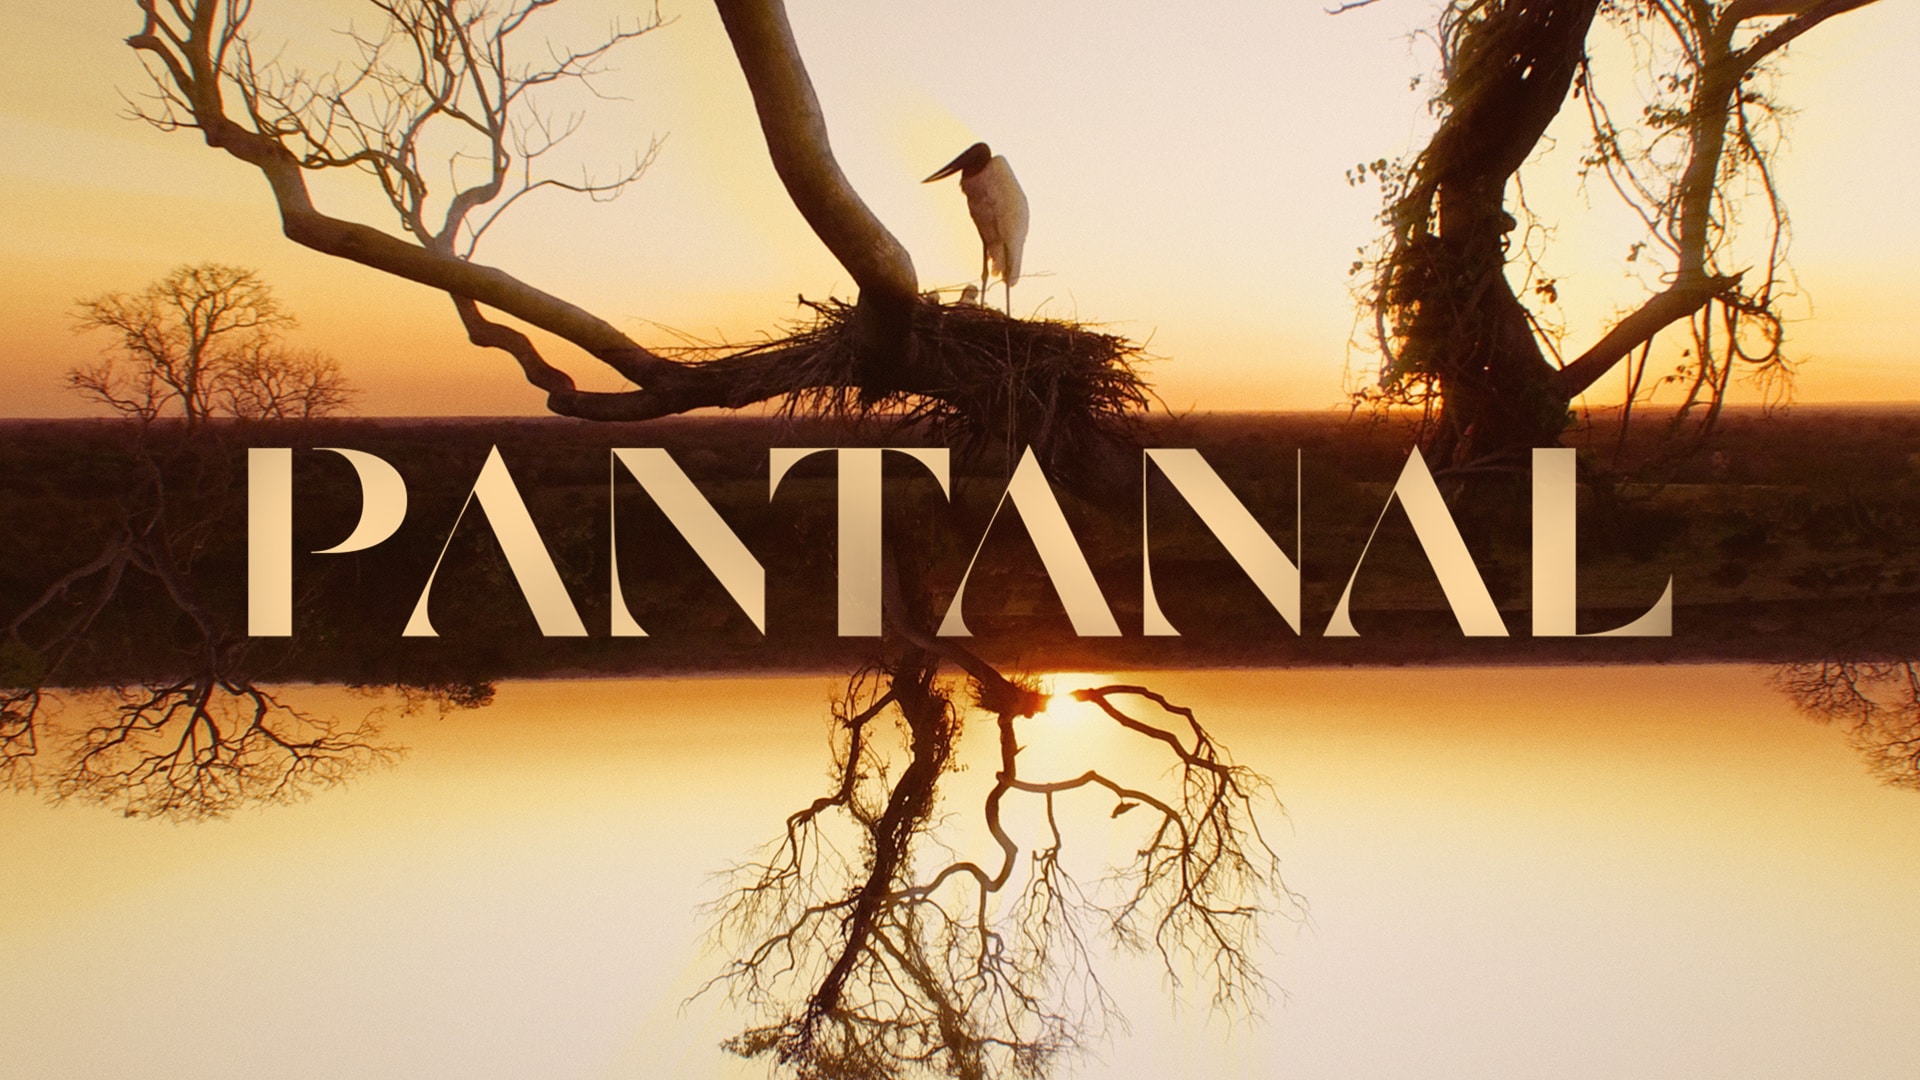 Vivo digitaliza a rotina dos personagens de ‘Pantanal’